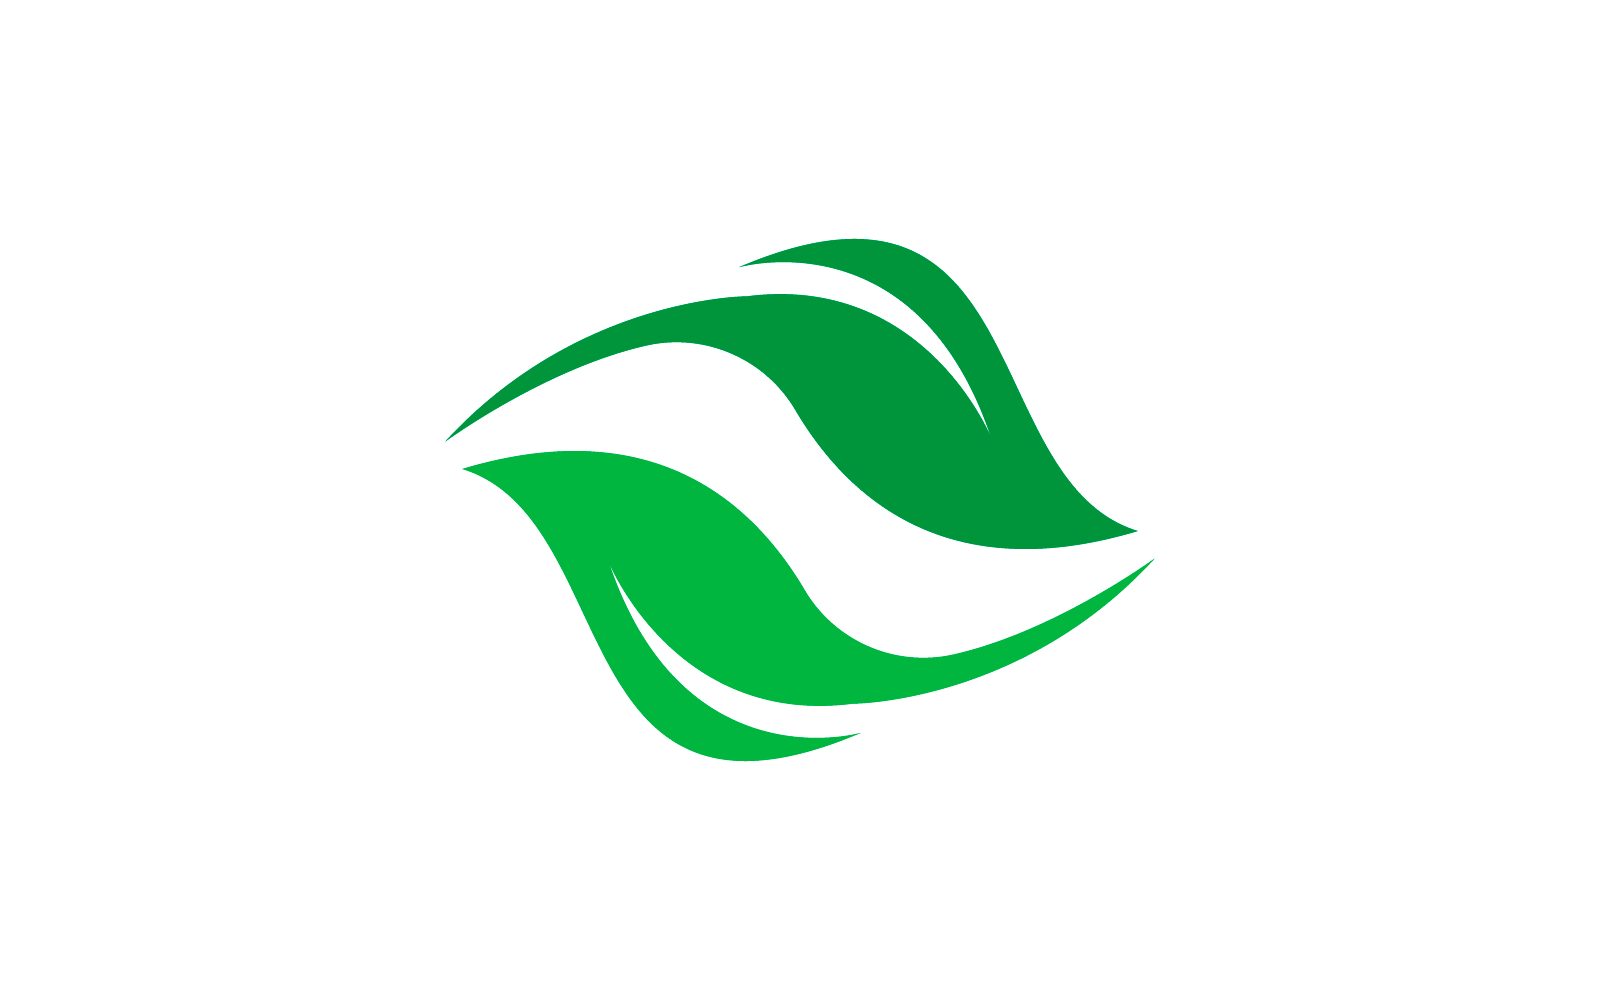 Green leaf illustration  logo flat design template